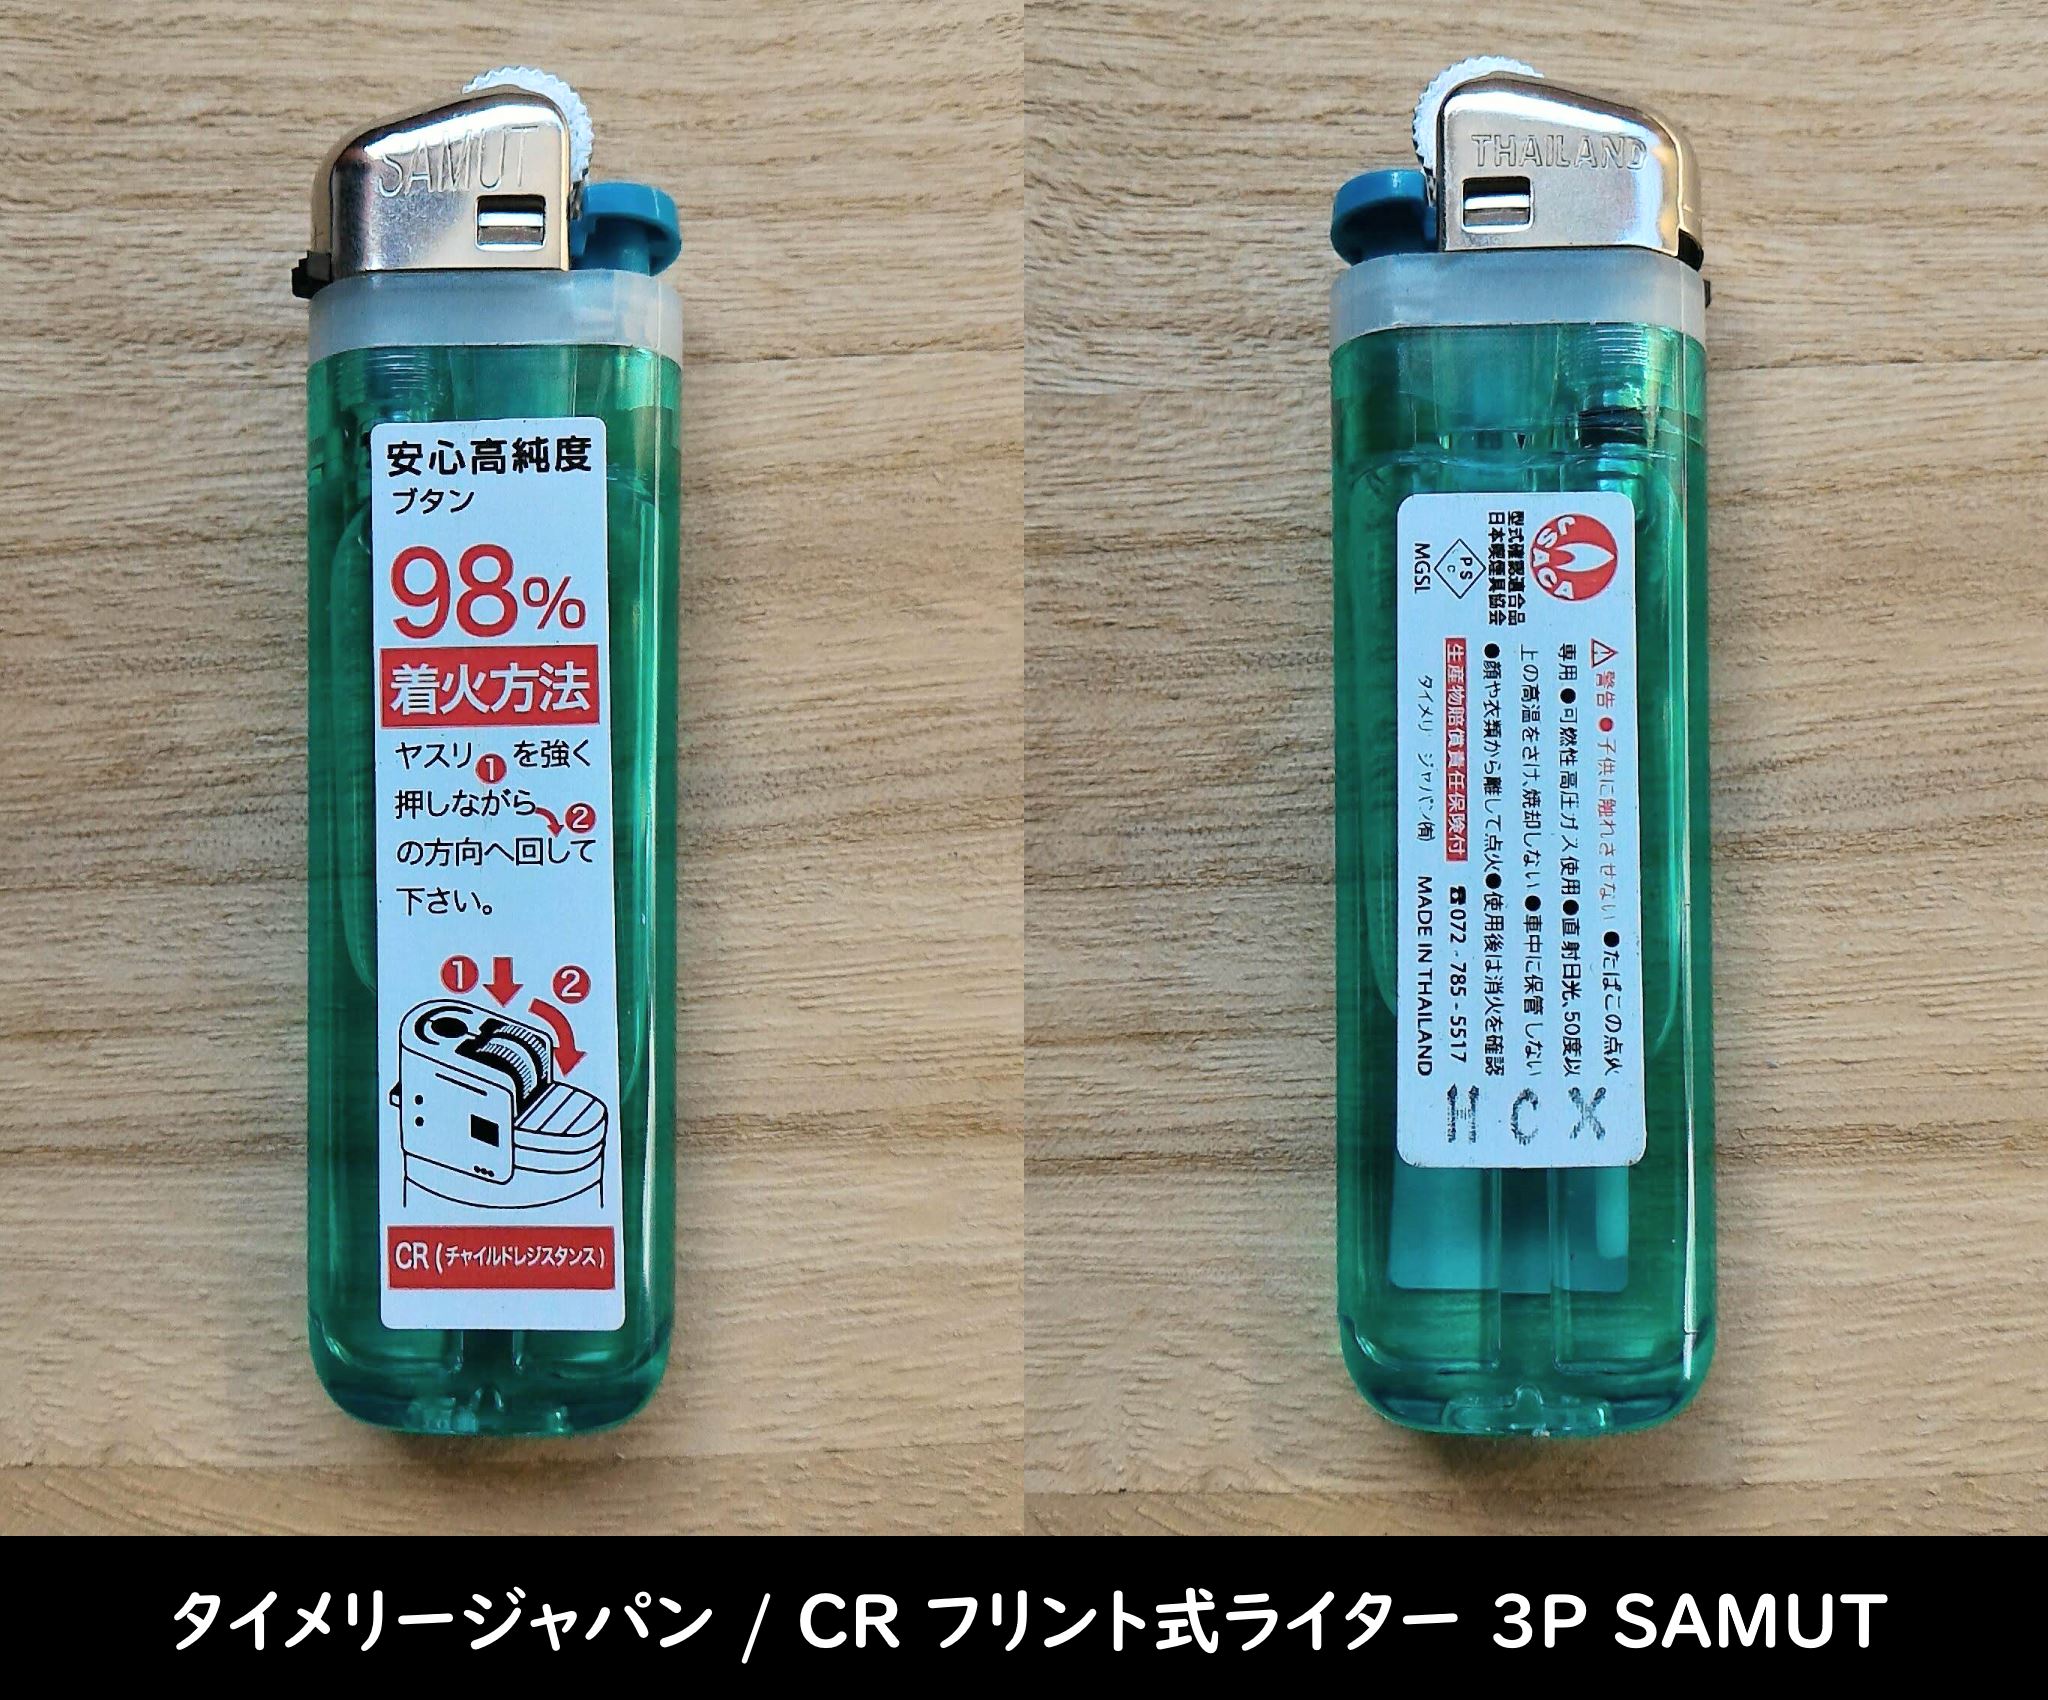 タイメリージャパン / CR フリント式ライター 3P SAMUT の個体